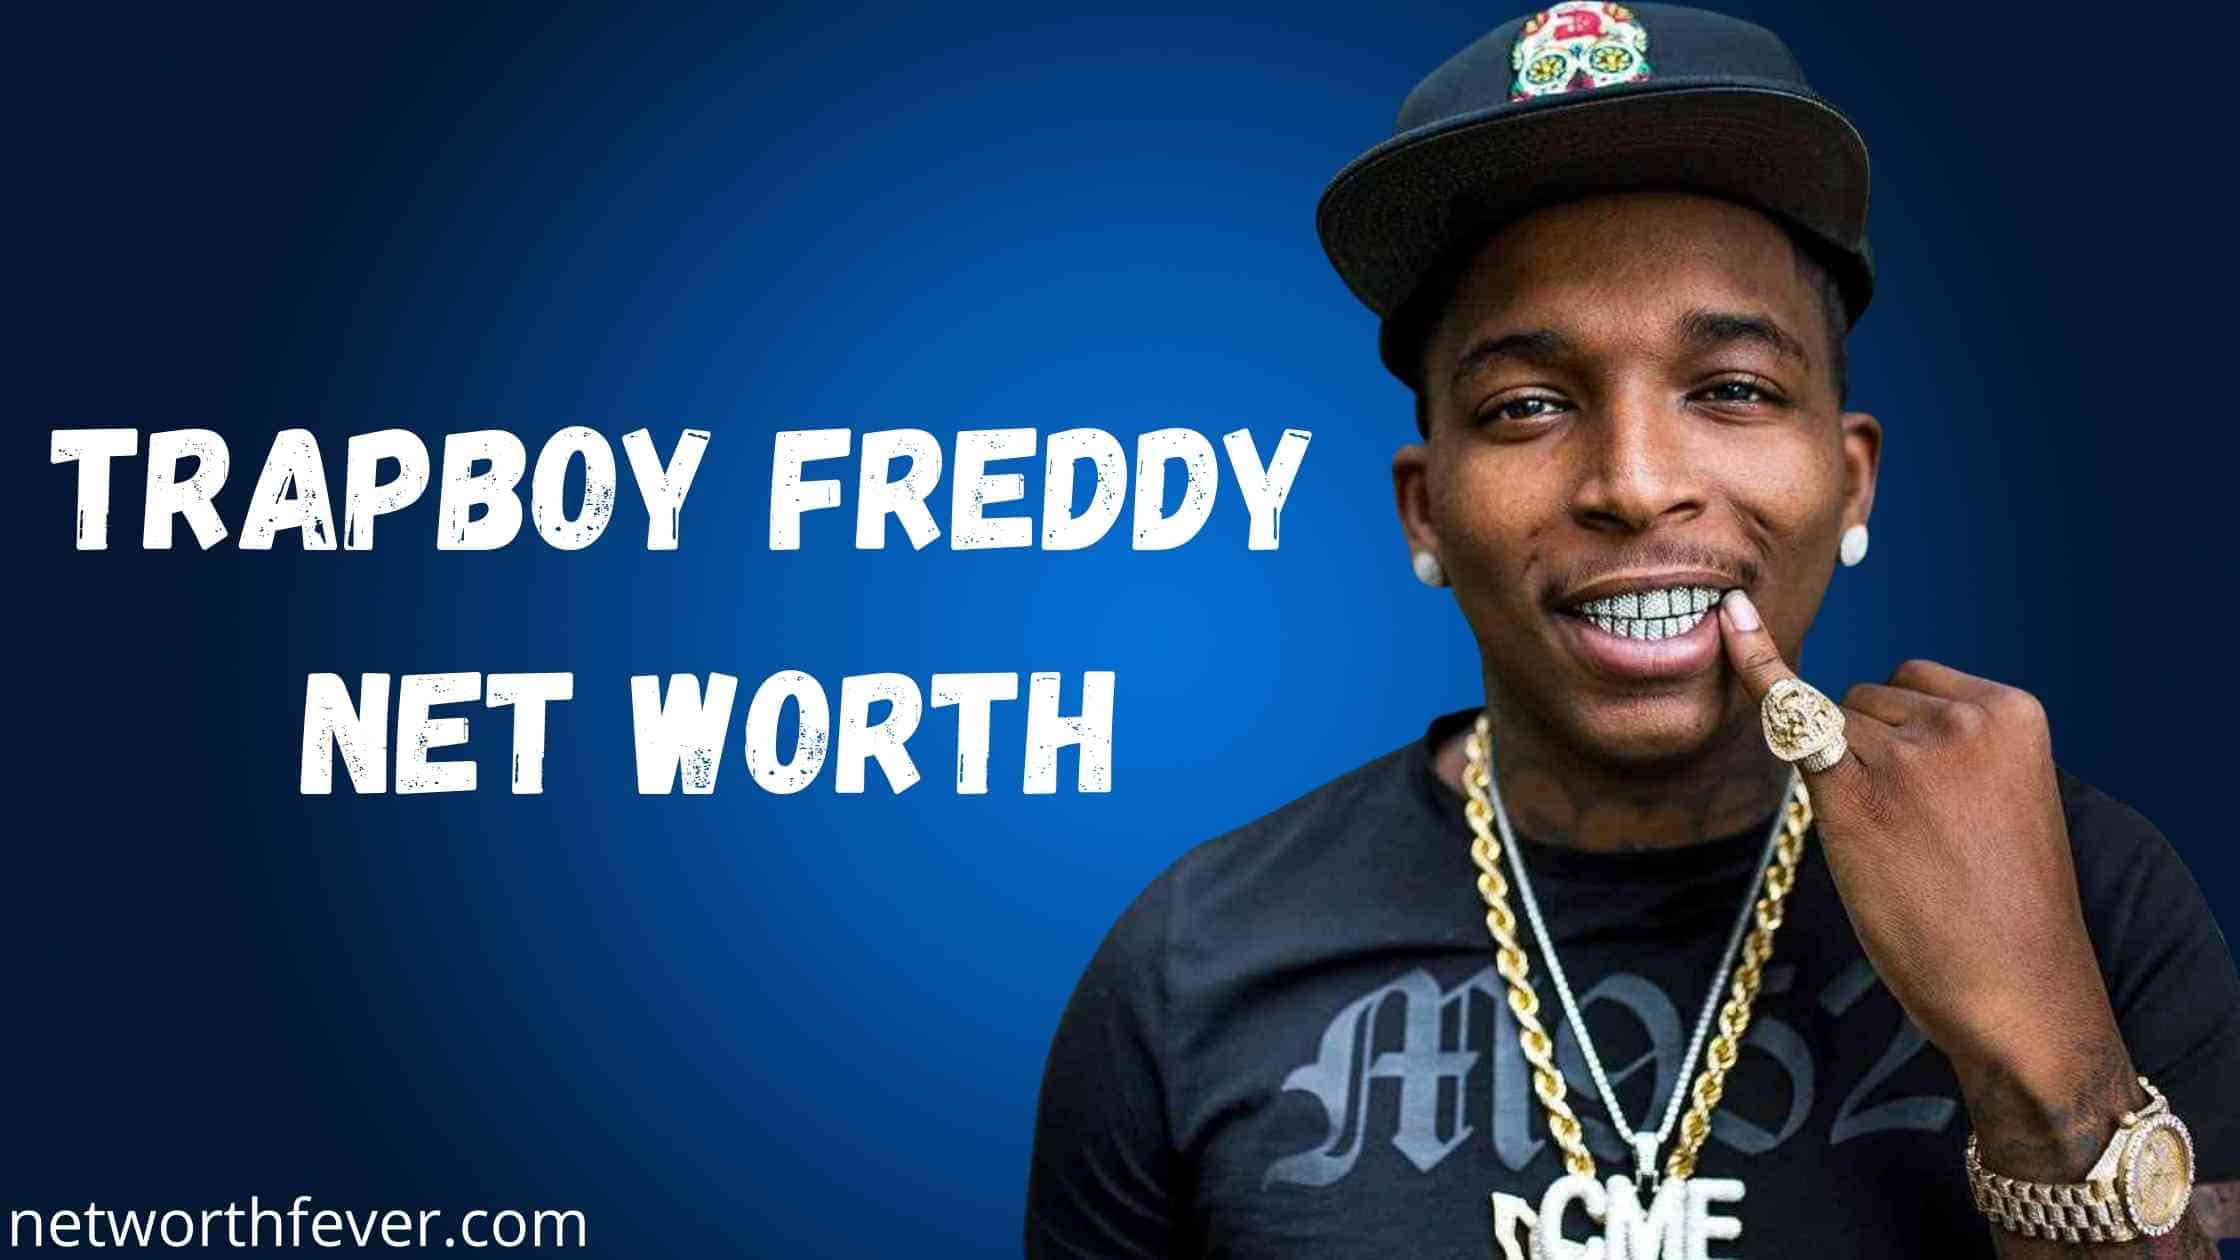 Trapboy Freddy Net Worth